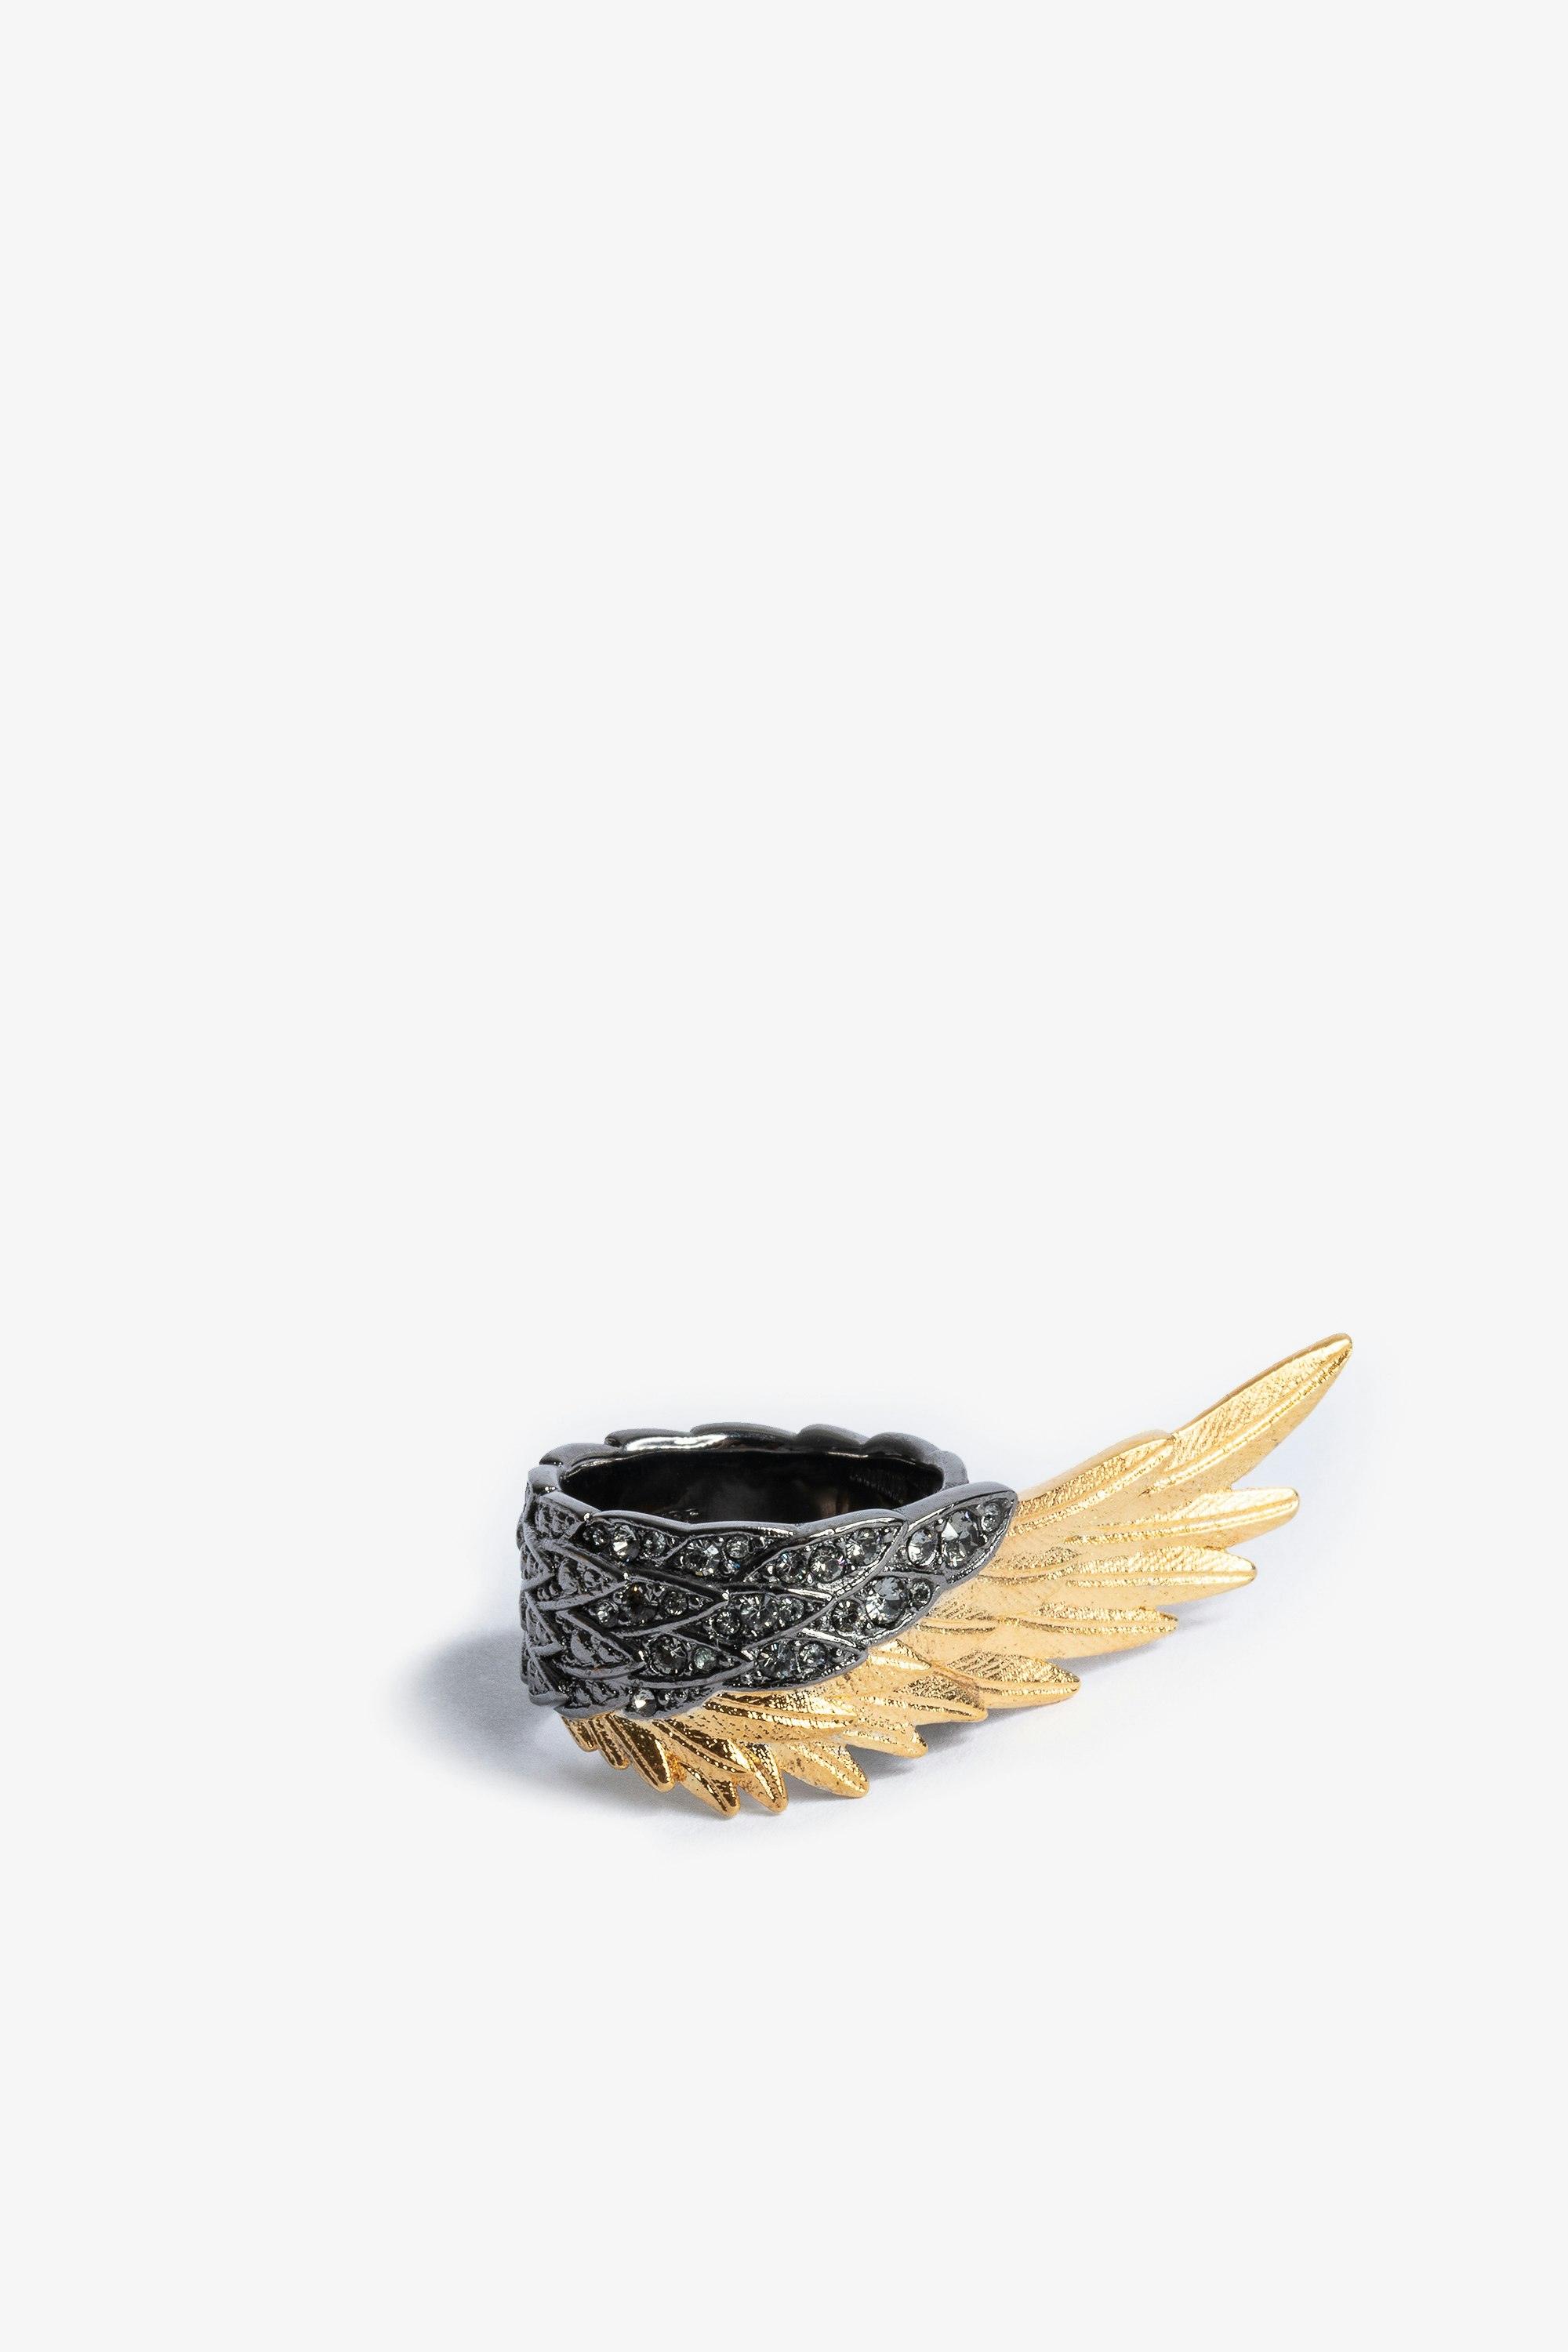 Rock Feather Spread your wings 指輪 レディースクリスタルをセットしたゴールドとブラックのブラスリング